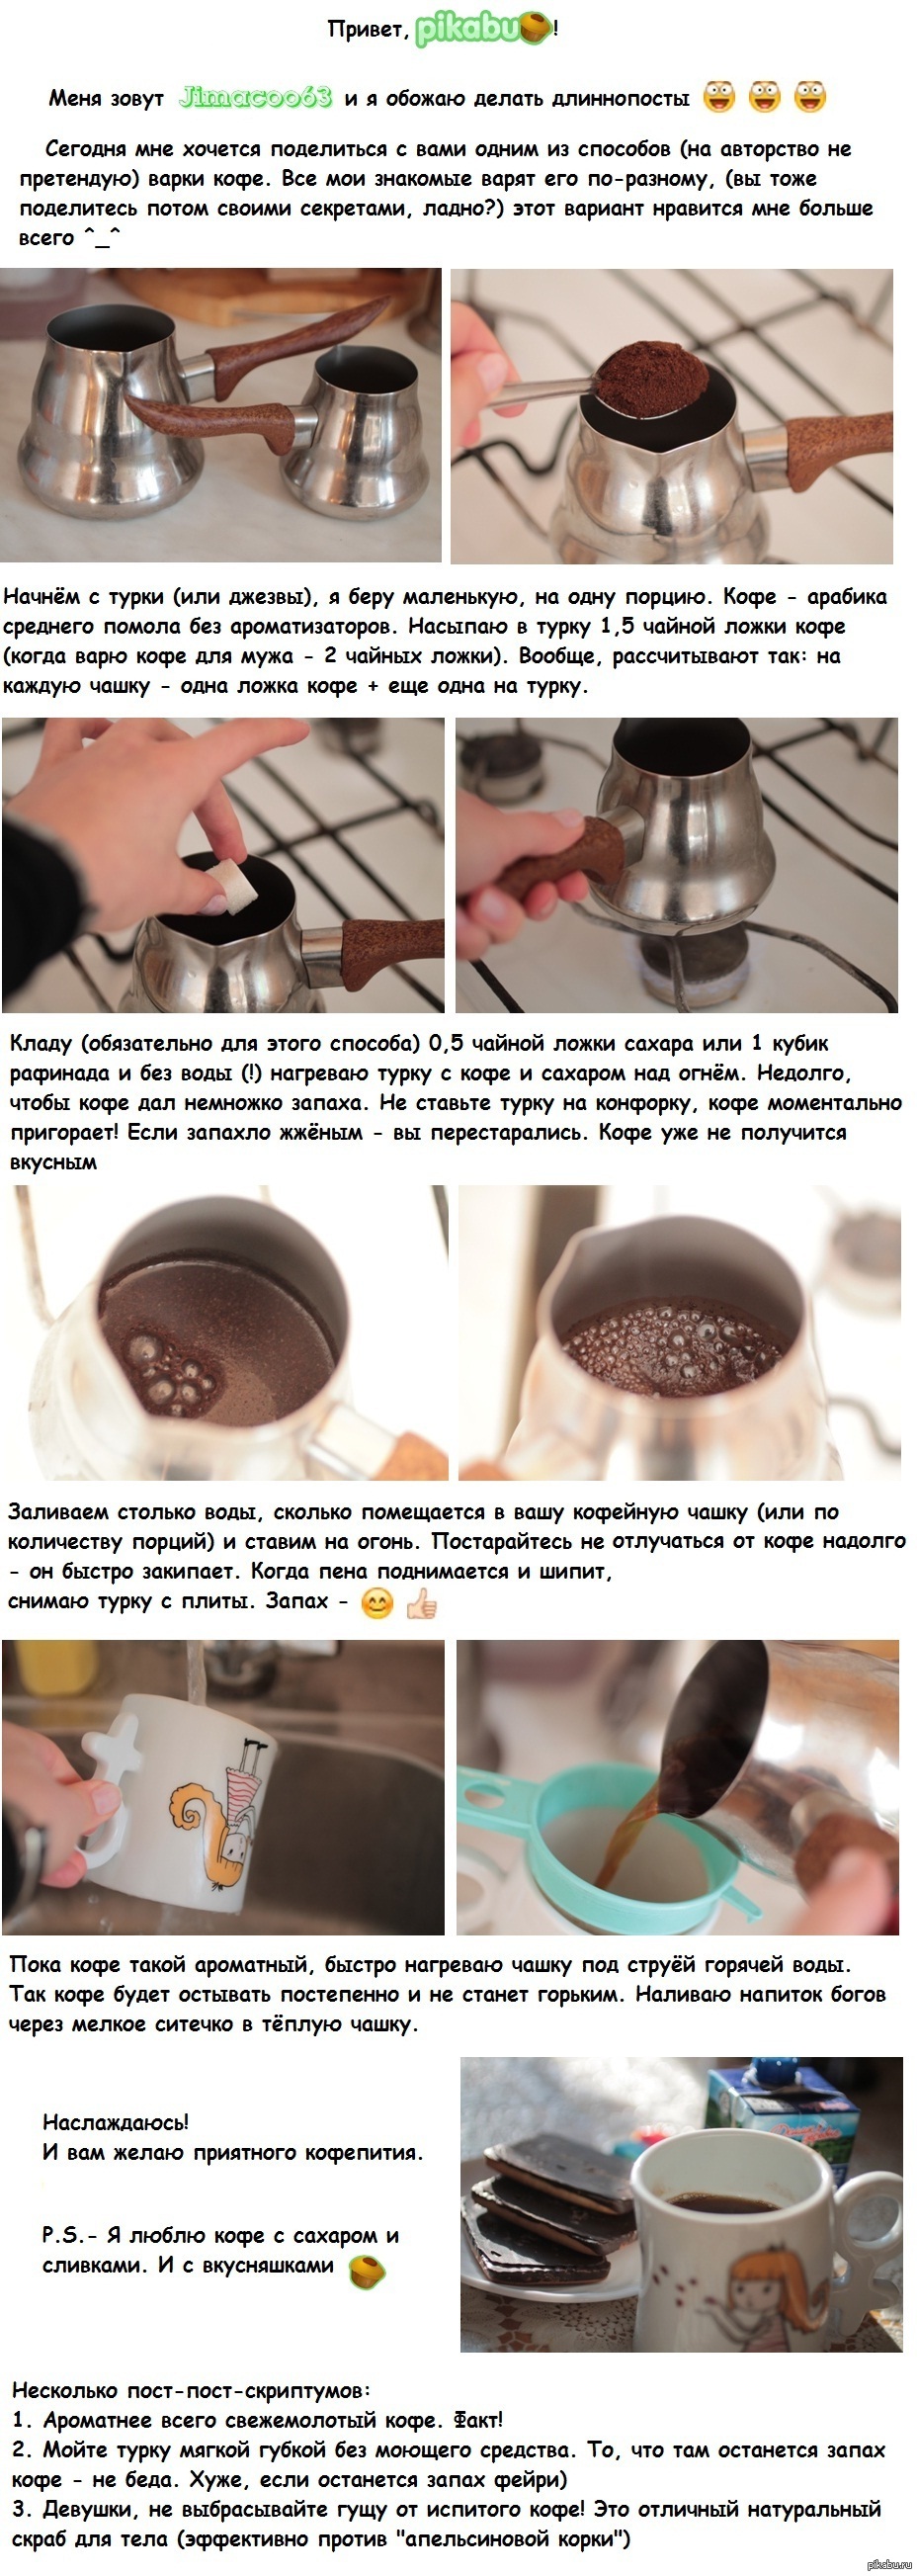 Рецепт молотого кофе. Кофе в турке. Кофе в турке пропорции кофе и воды. Приготовление кофе в турке. Как варить кофе.